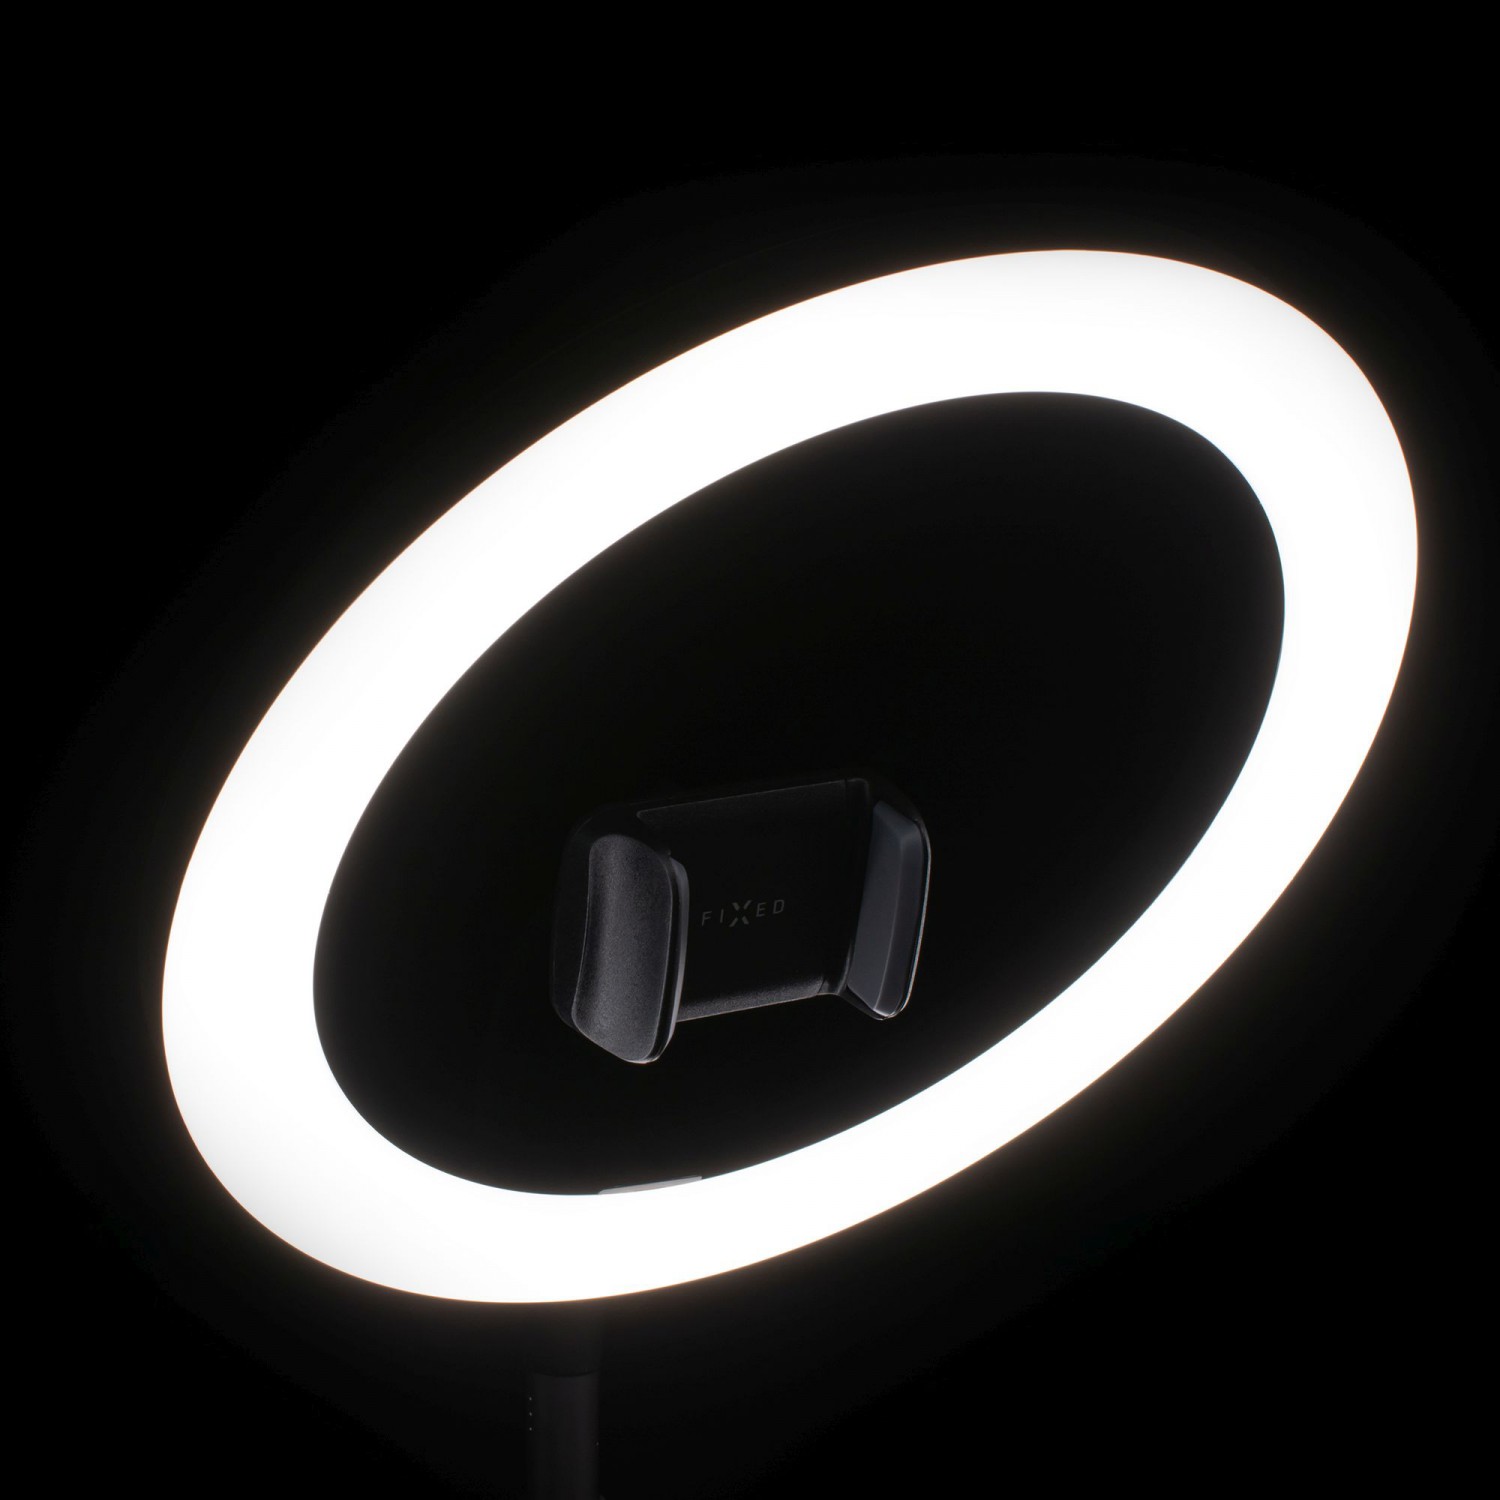 Stativ s LED svítidlem, 3/4" šroubem, držákem, ovládáním na USB kabelu, FIXED LEDRing, černá